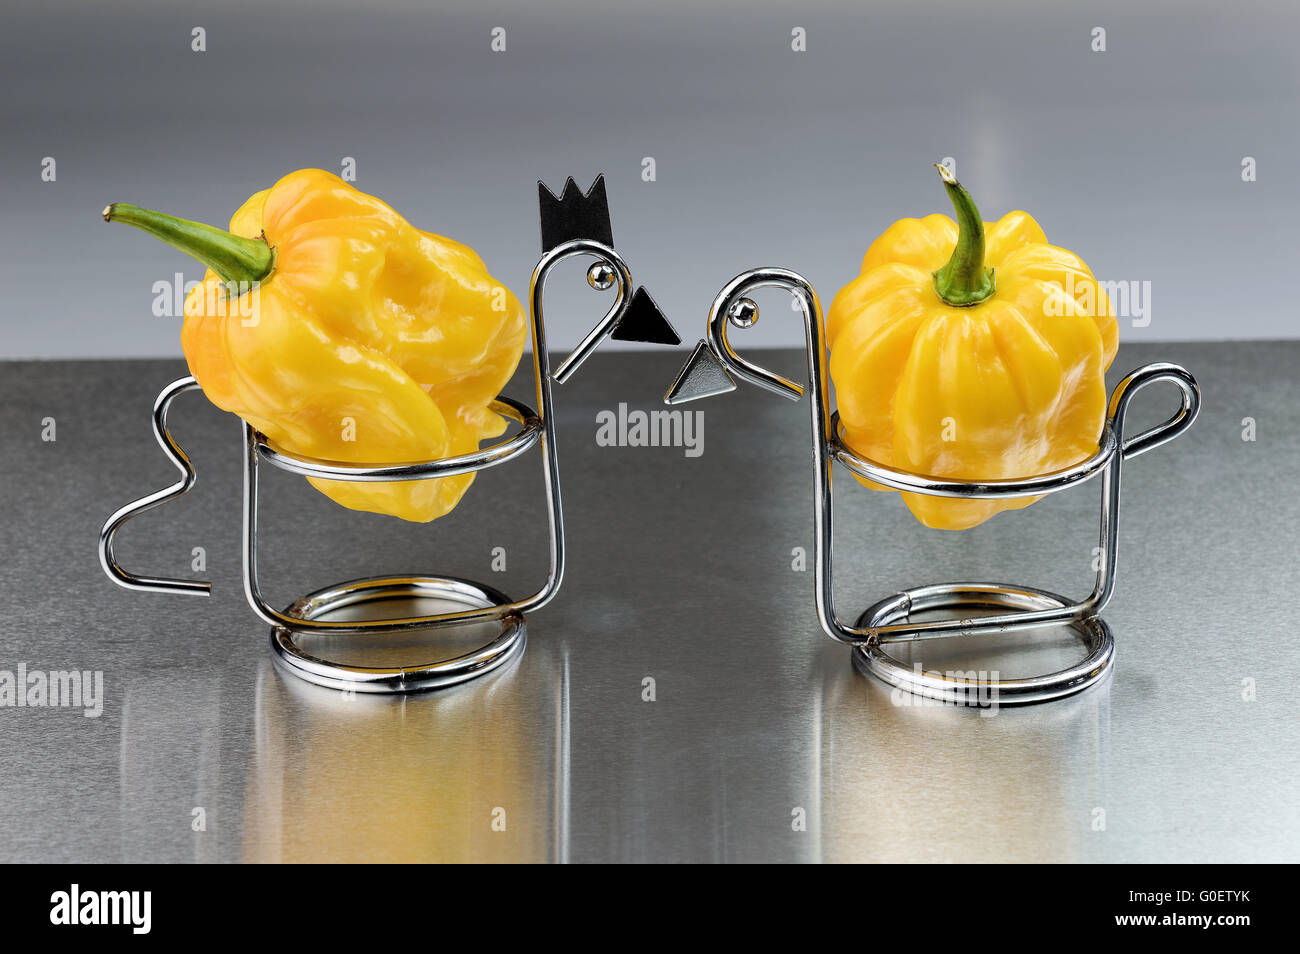 Hot pepper, yellow habanero Stock Photo